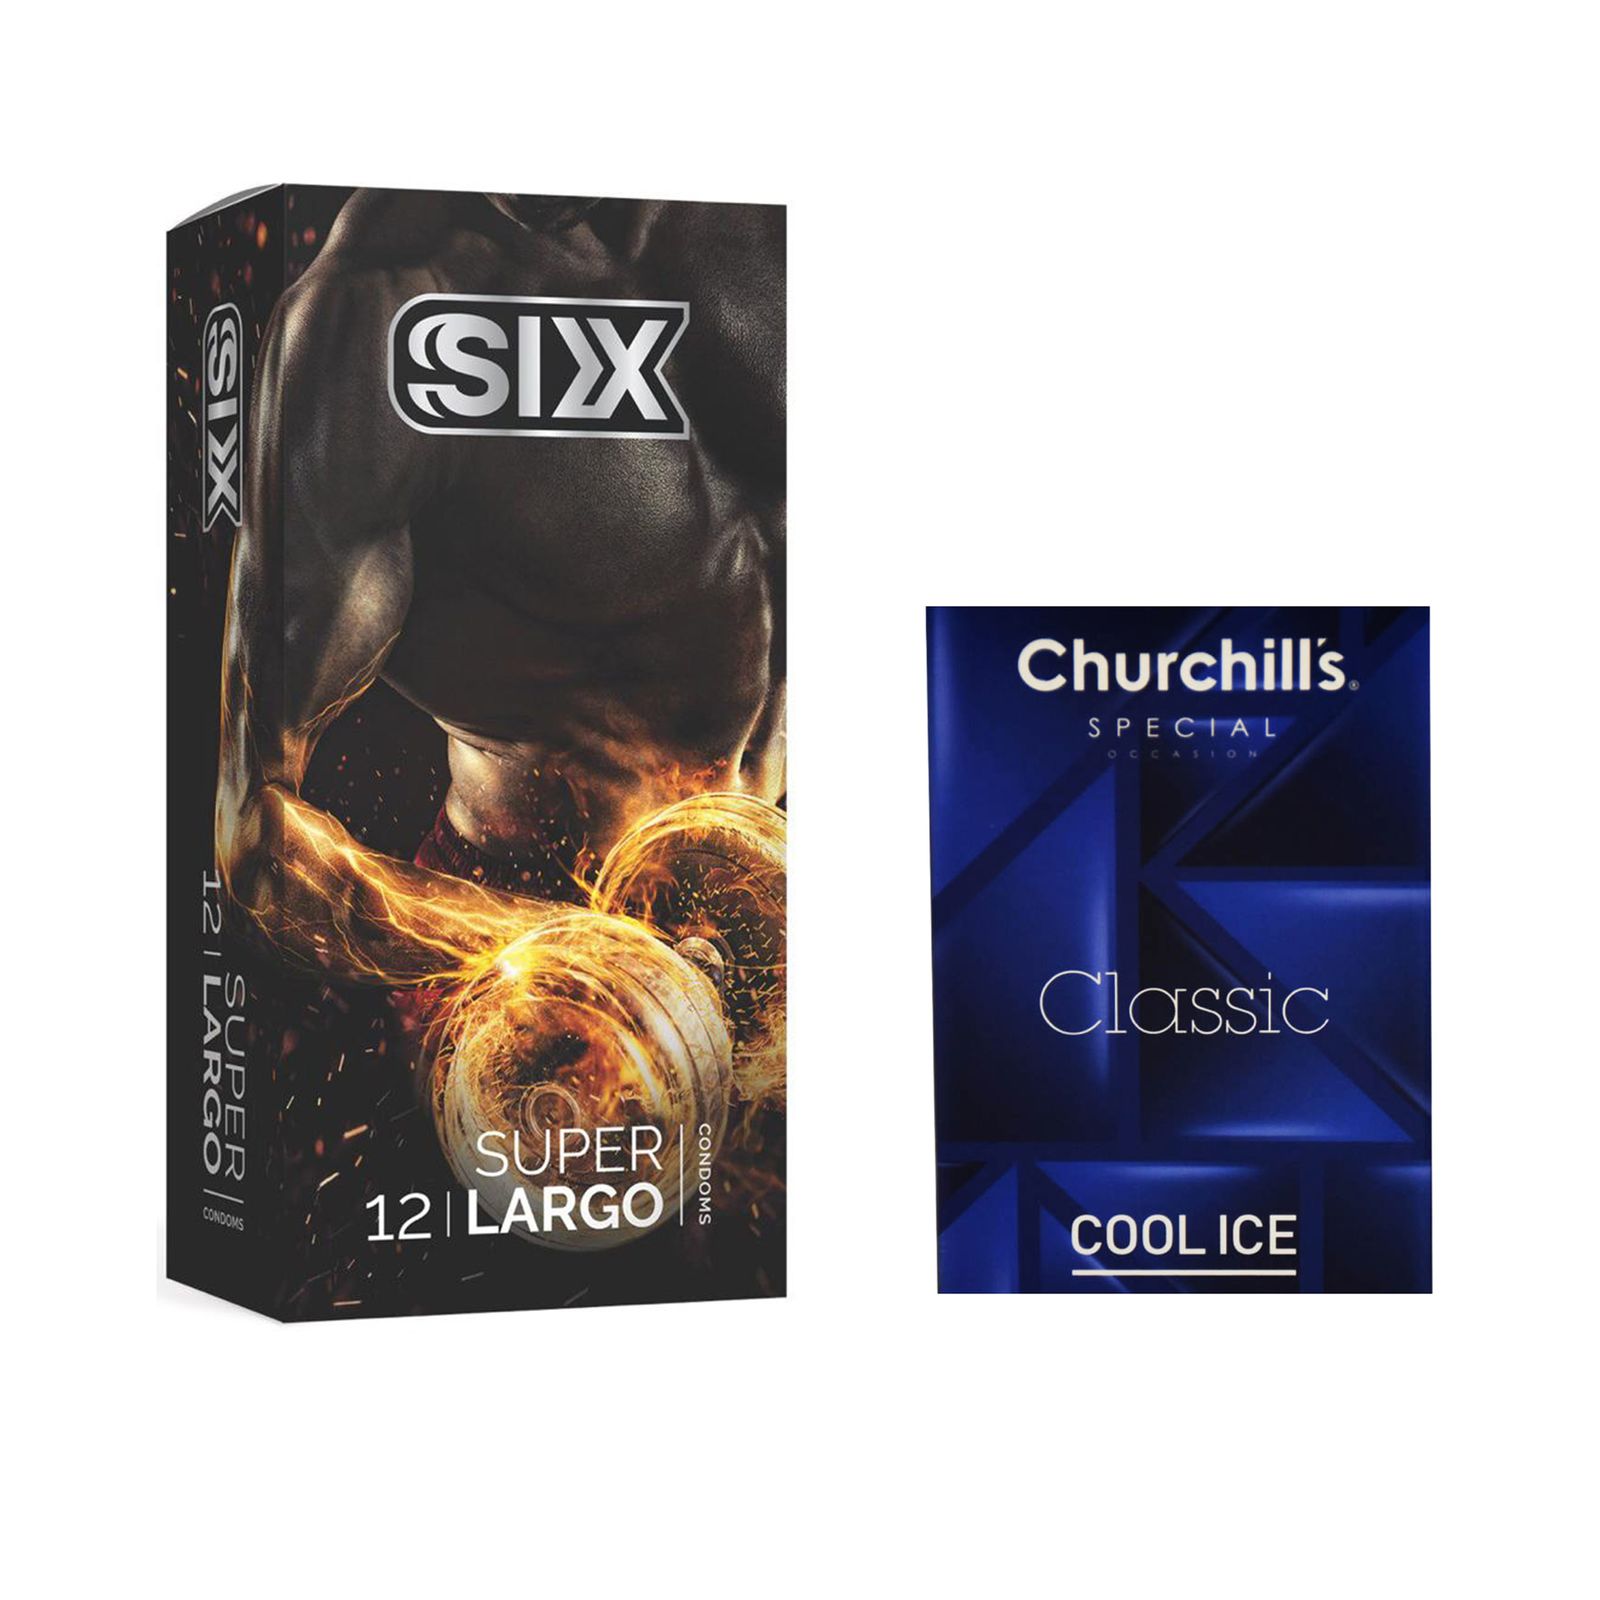 کاندوم سیکس مدل Super Largo بسته 12 عددی به همراه کاندوم چرچیلز مدل Cool Ice بسته 3 عددی -  - 1